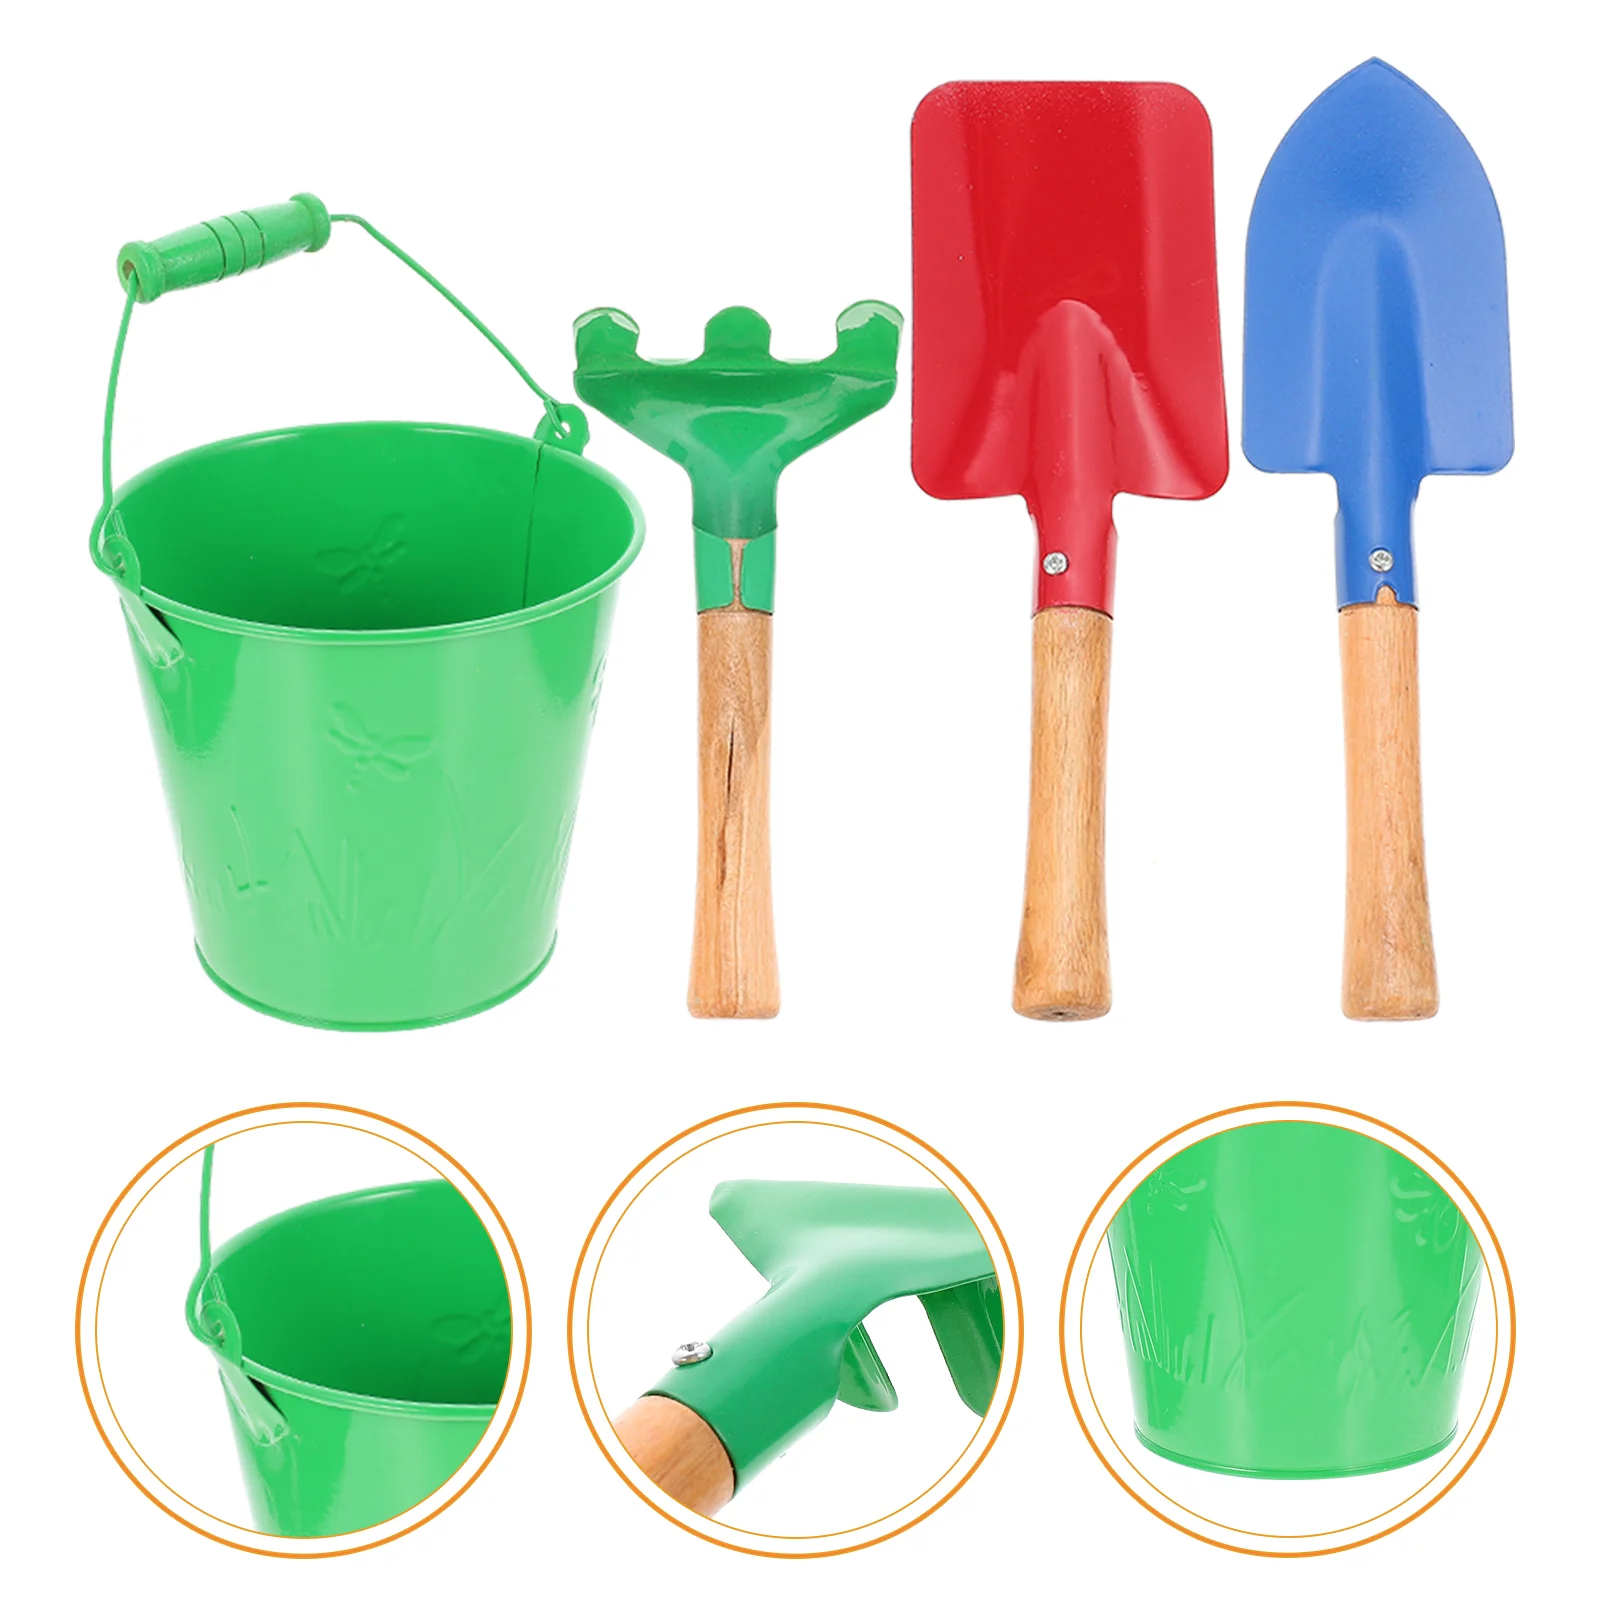 

1 комплект, Детские искусственные лопаты для посадки, лопаты для садоводства, садовые лопатки, грабли, пляжный песок для малышей, для детей